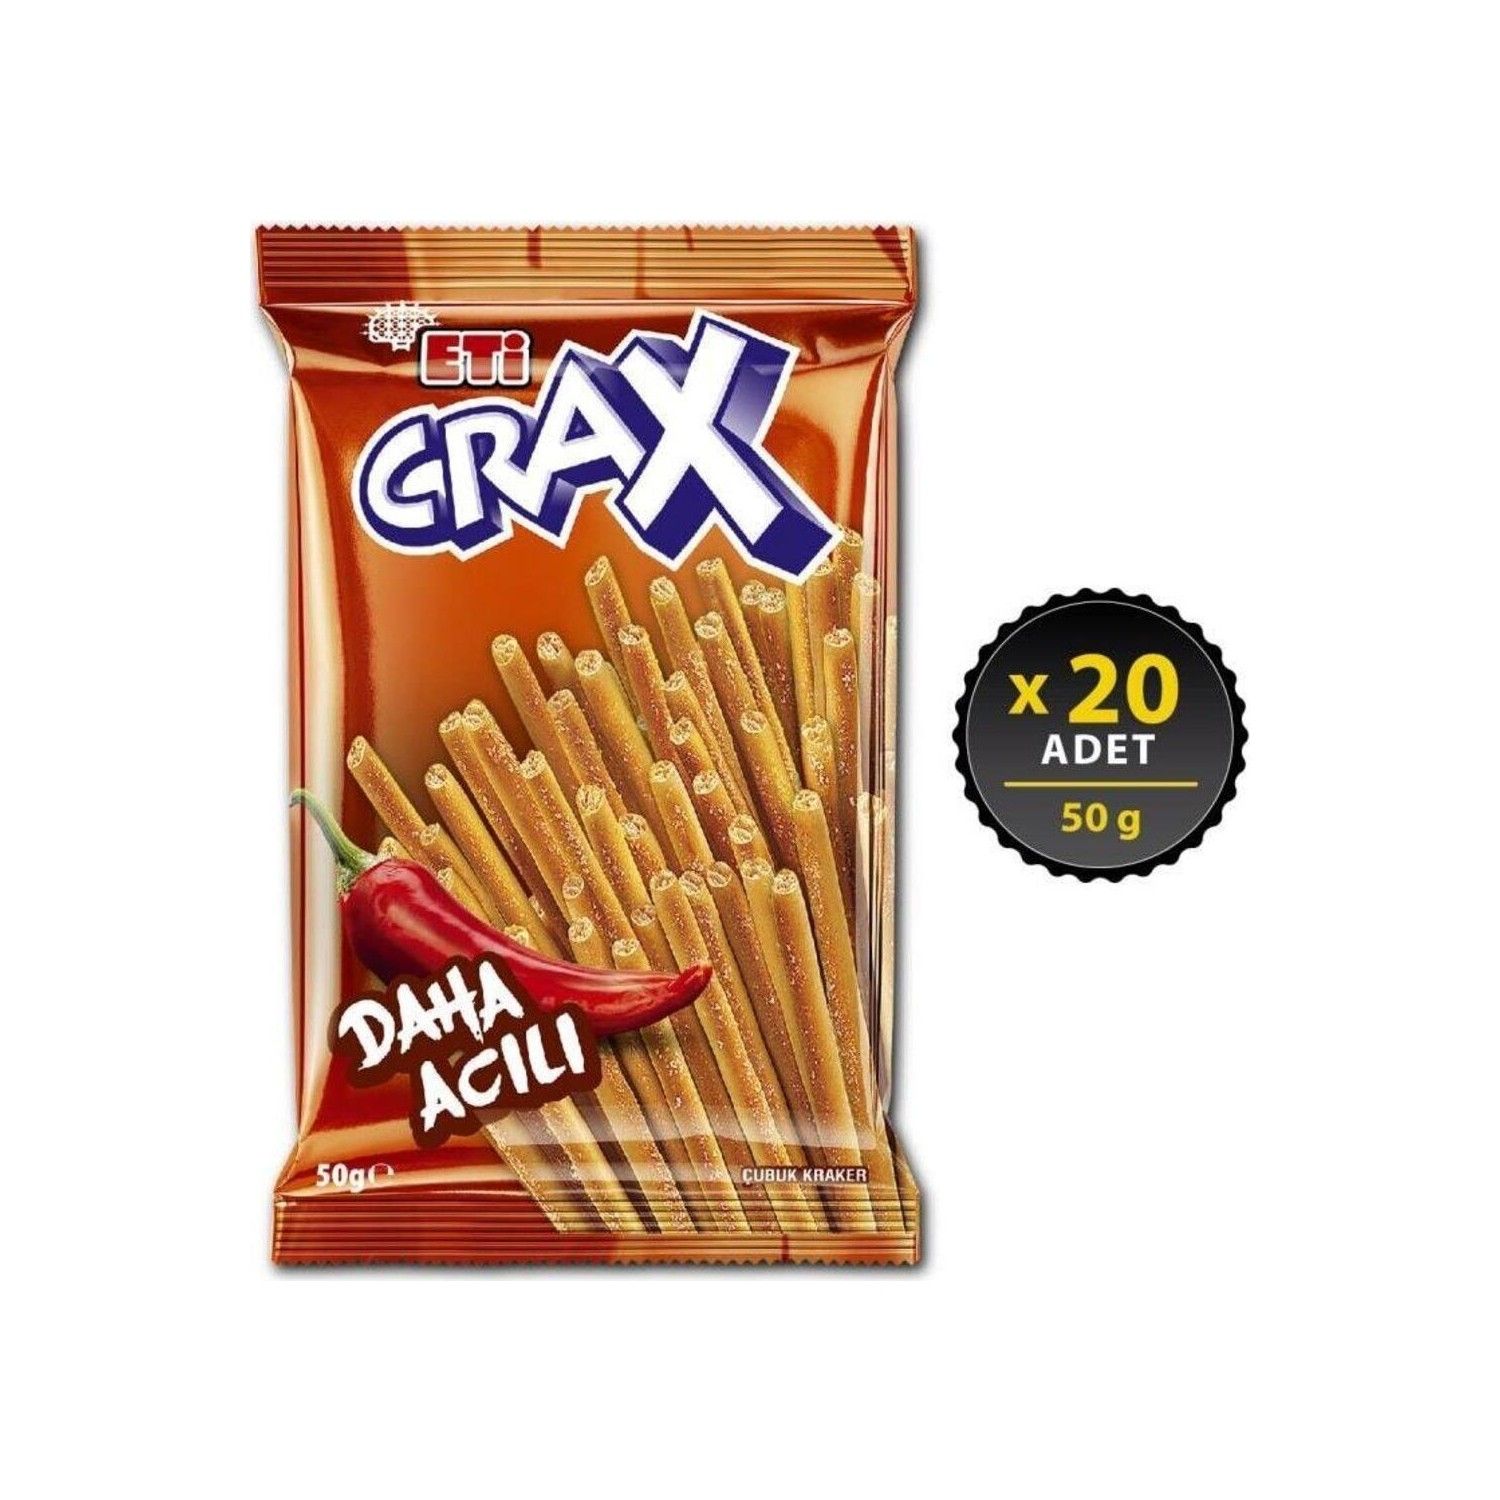 Eti Crax Acılı Çubuk Kraker 50 Gr x 20 Adet